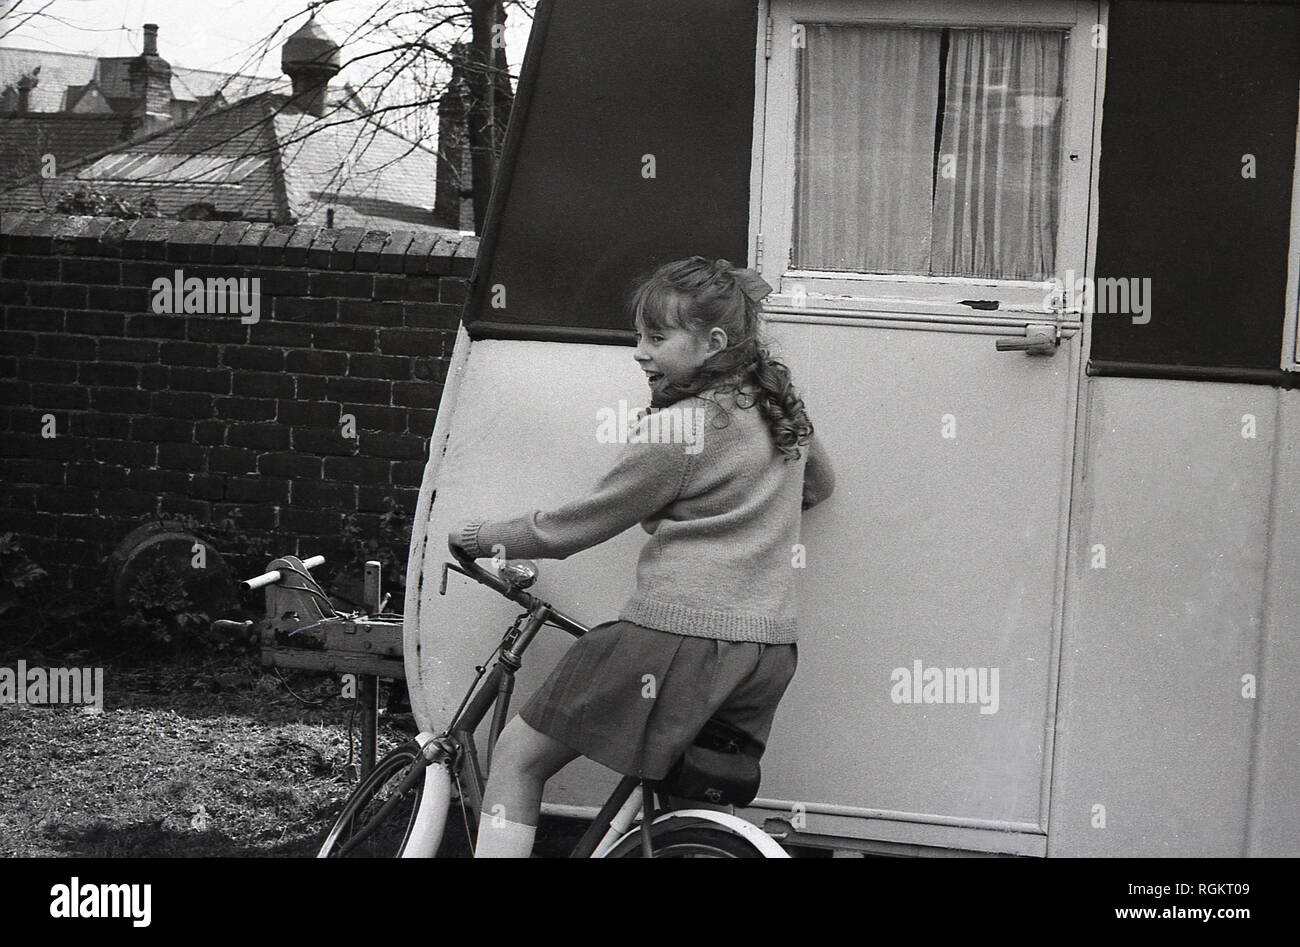 Années 1960, jeune écolière sur une bicyclette par vieille caravane dans un jardin. Banque D'Images